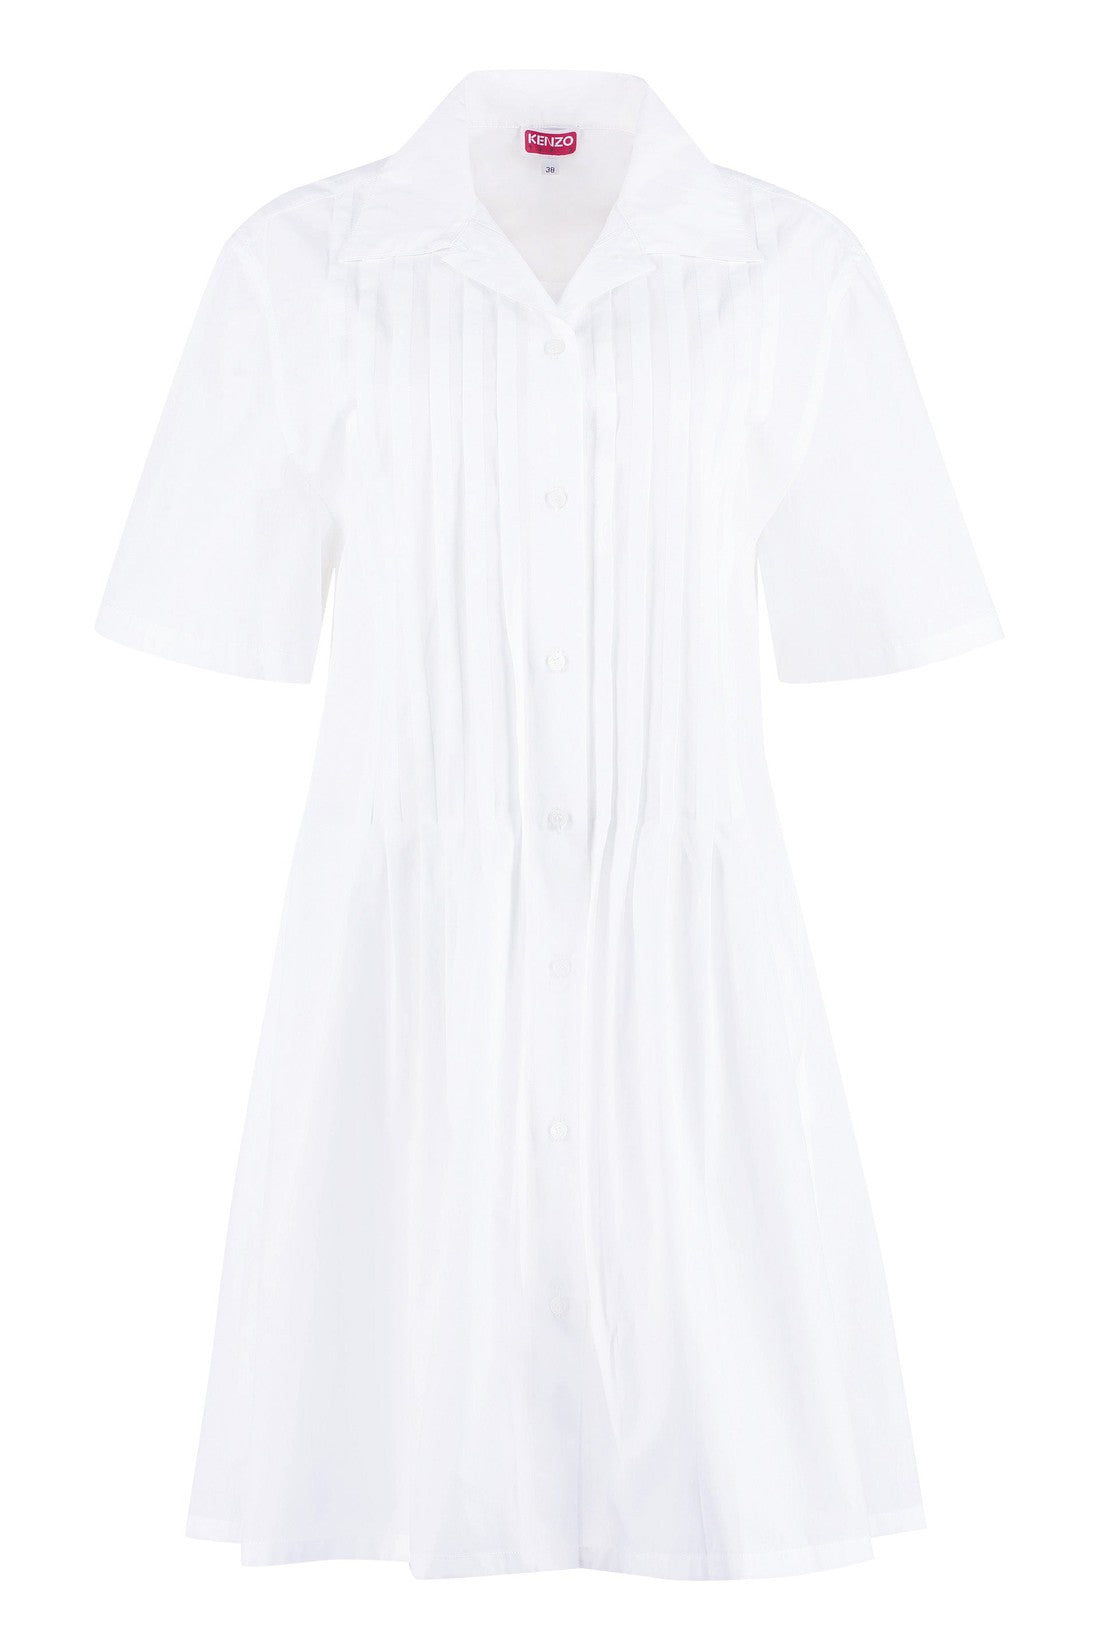 Kenzo-OUTLET-SALE-Cotton shirtdress-ARCHIVIST